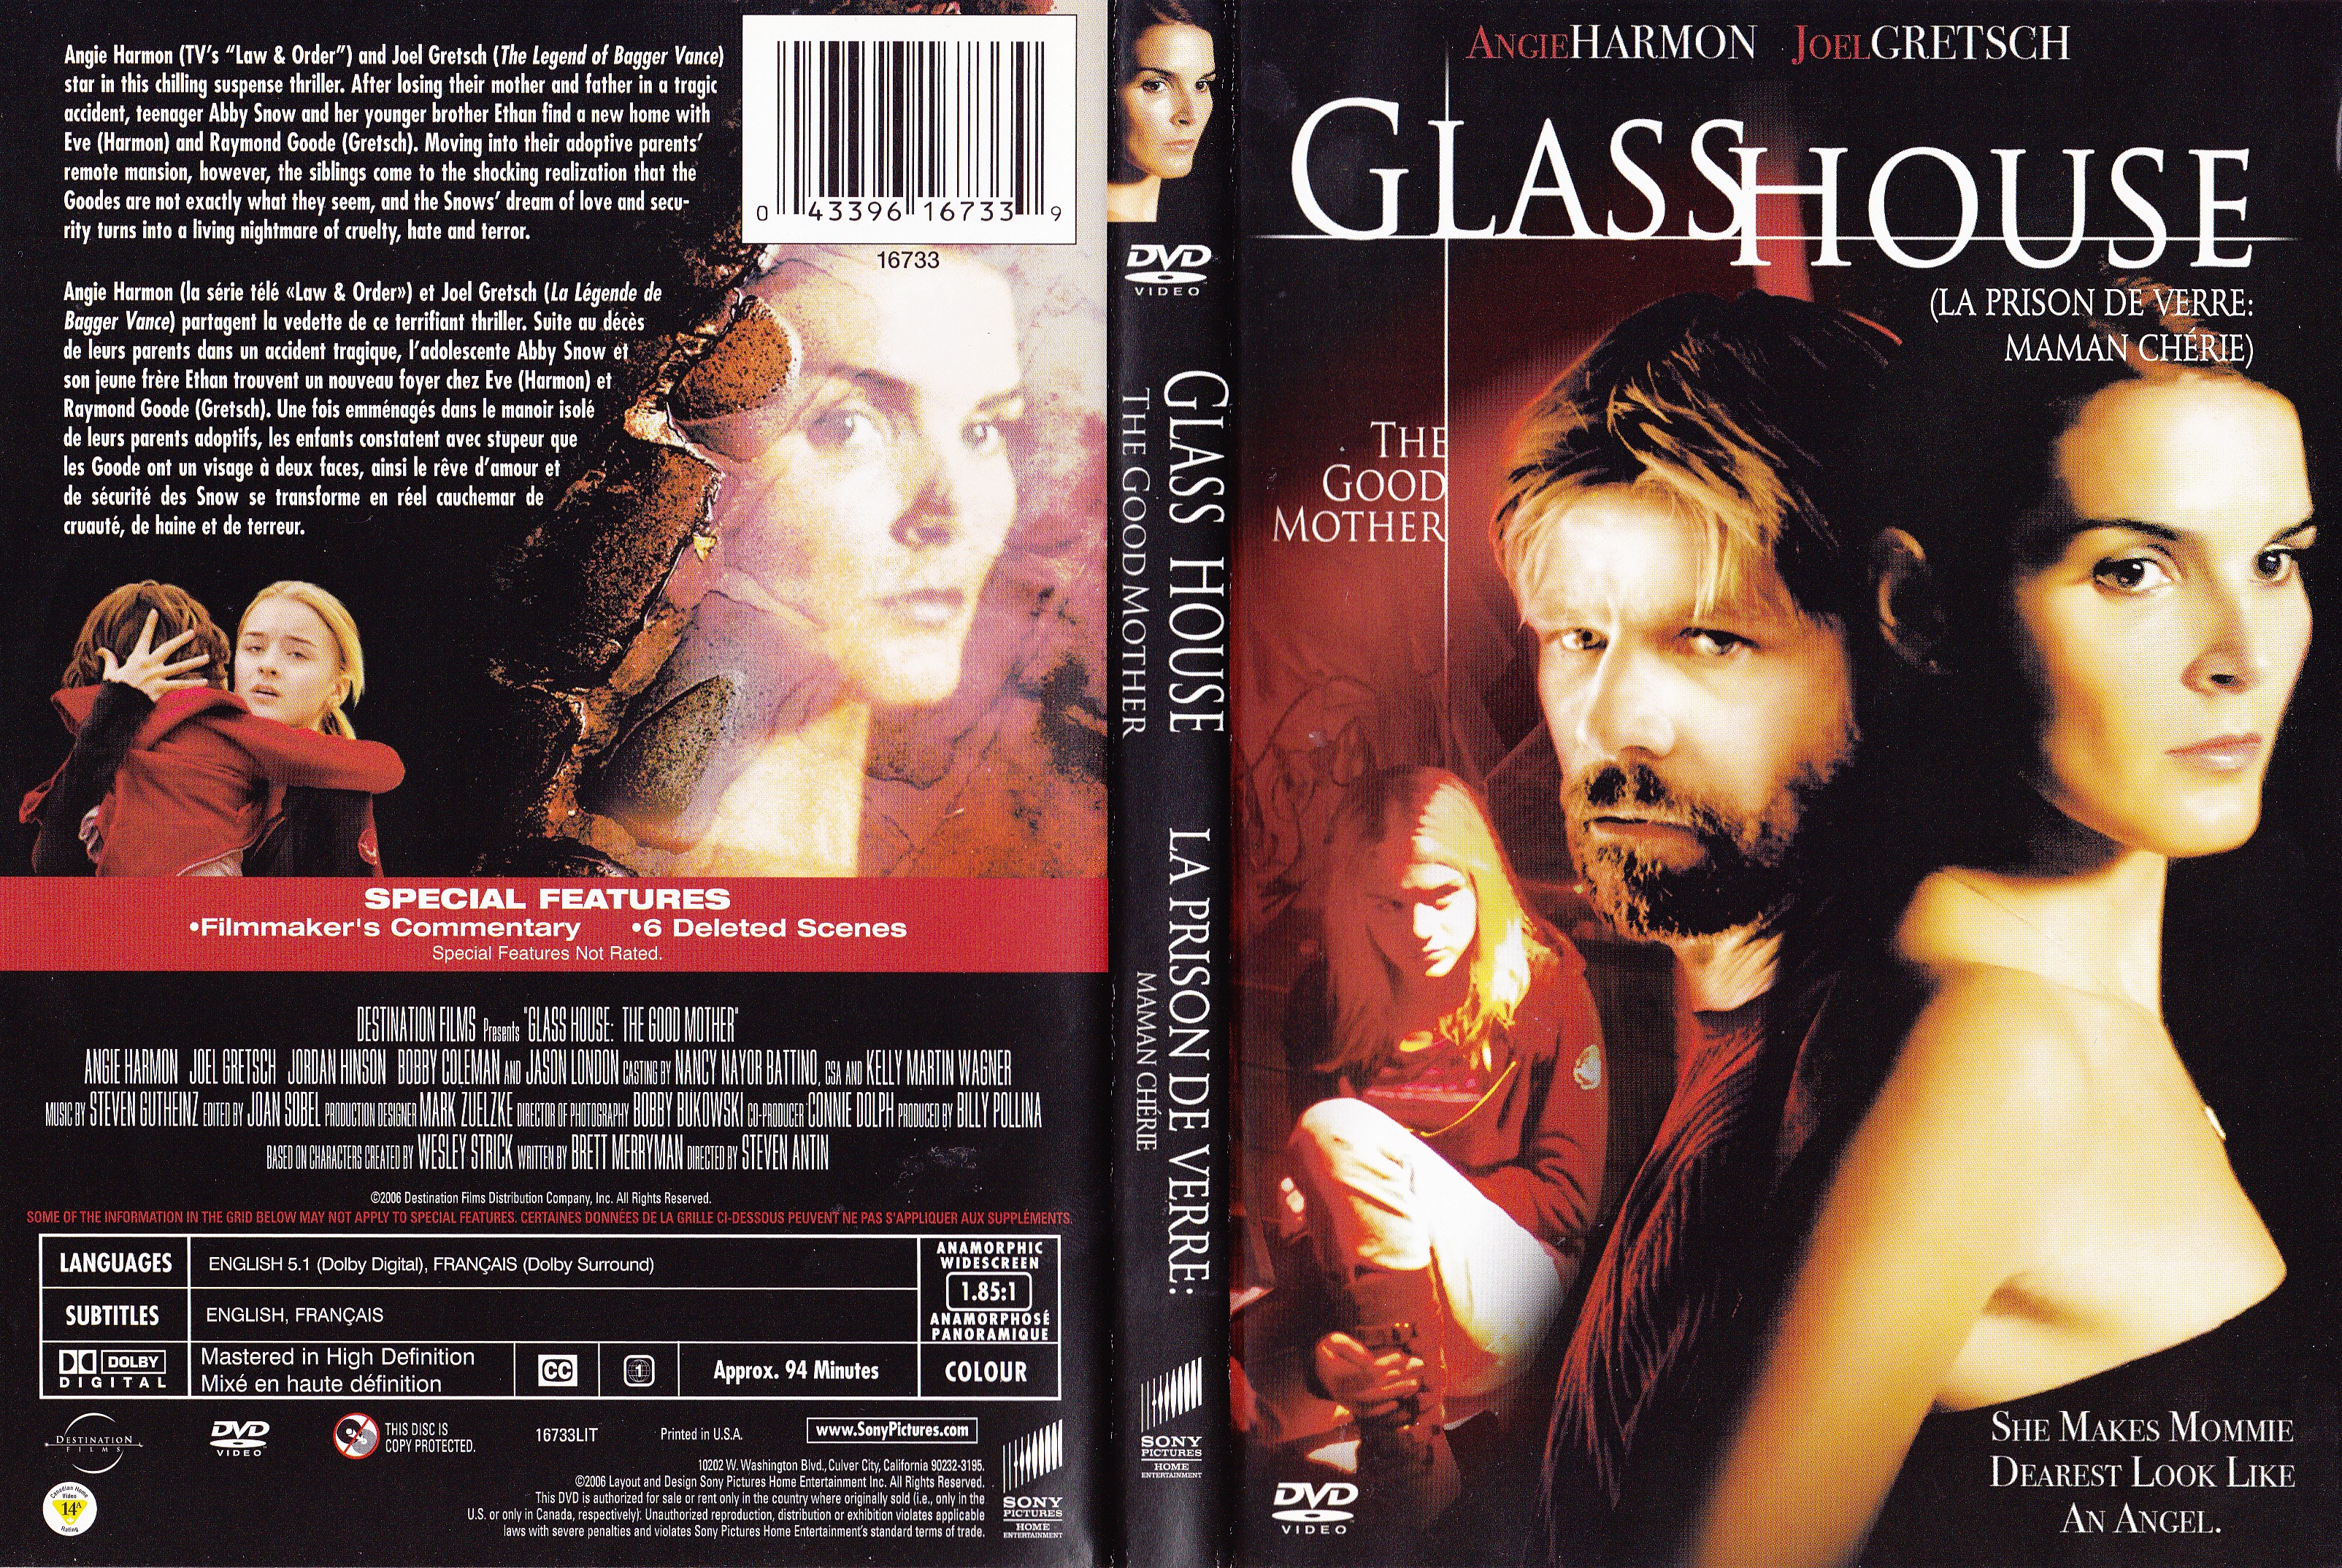 Jaquette DVD La prison de verre 2 - Glass house 2  (Canadienne)